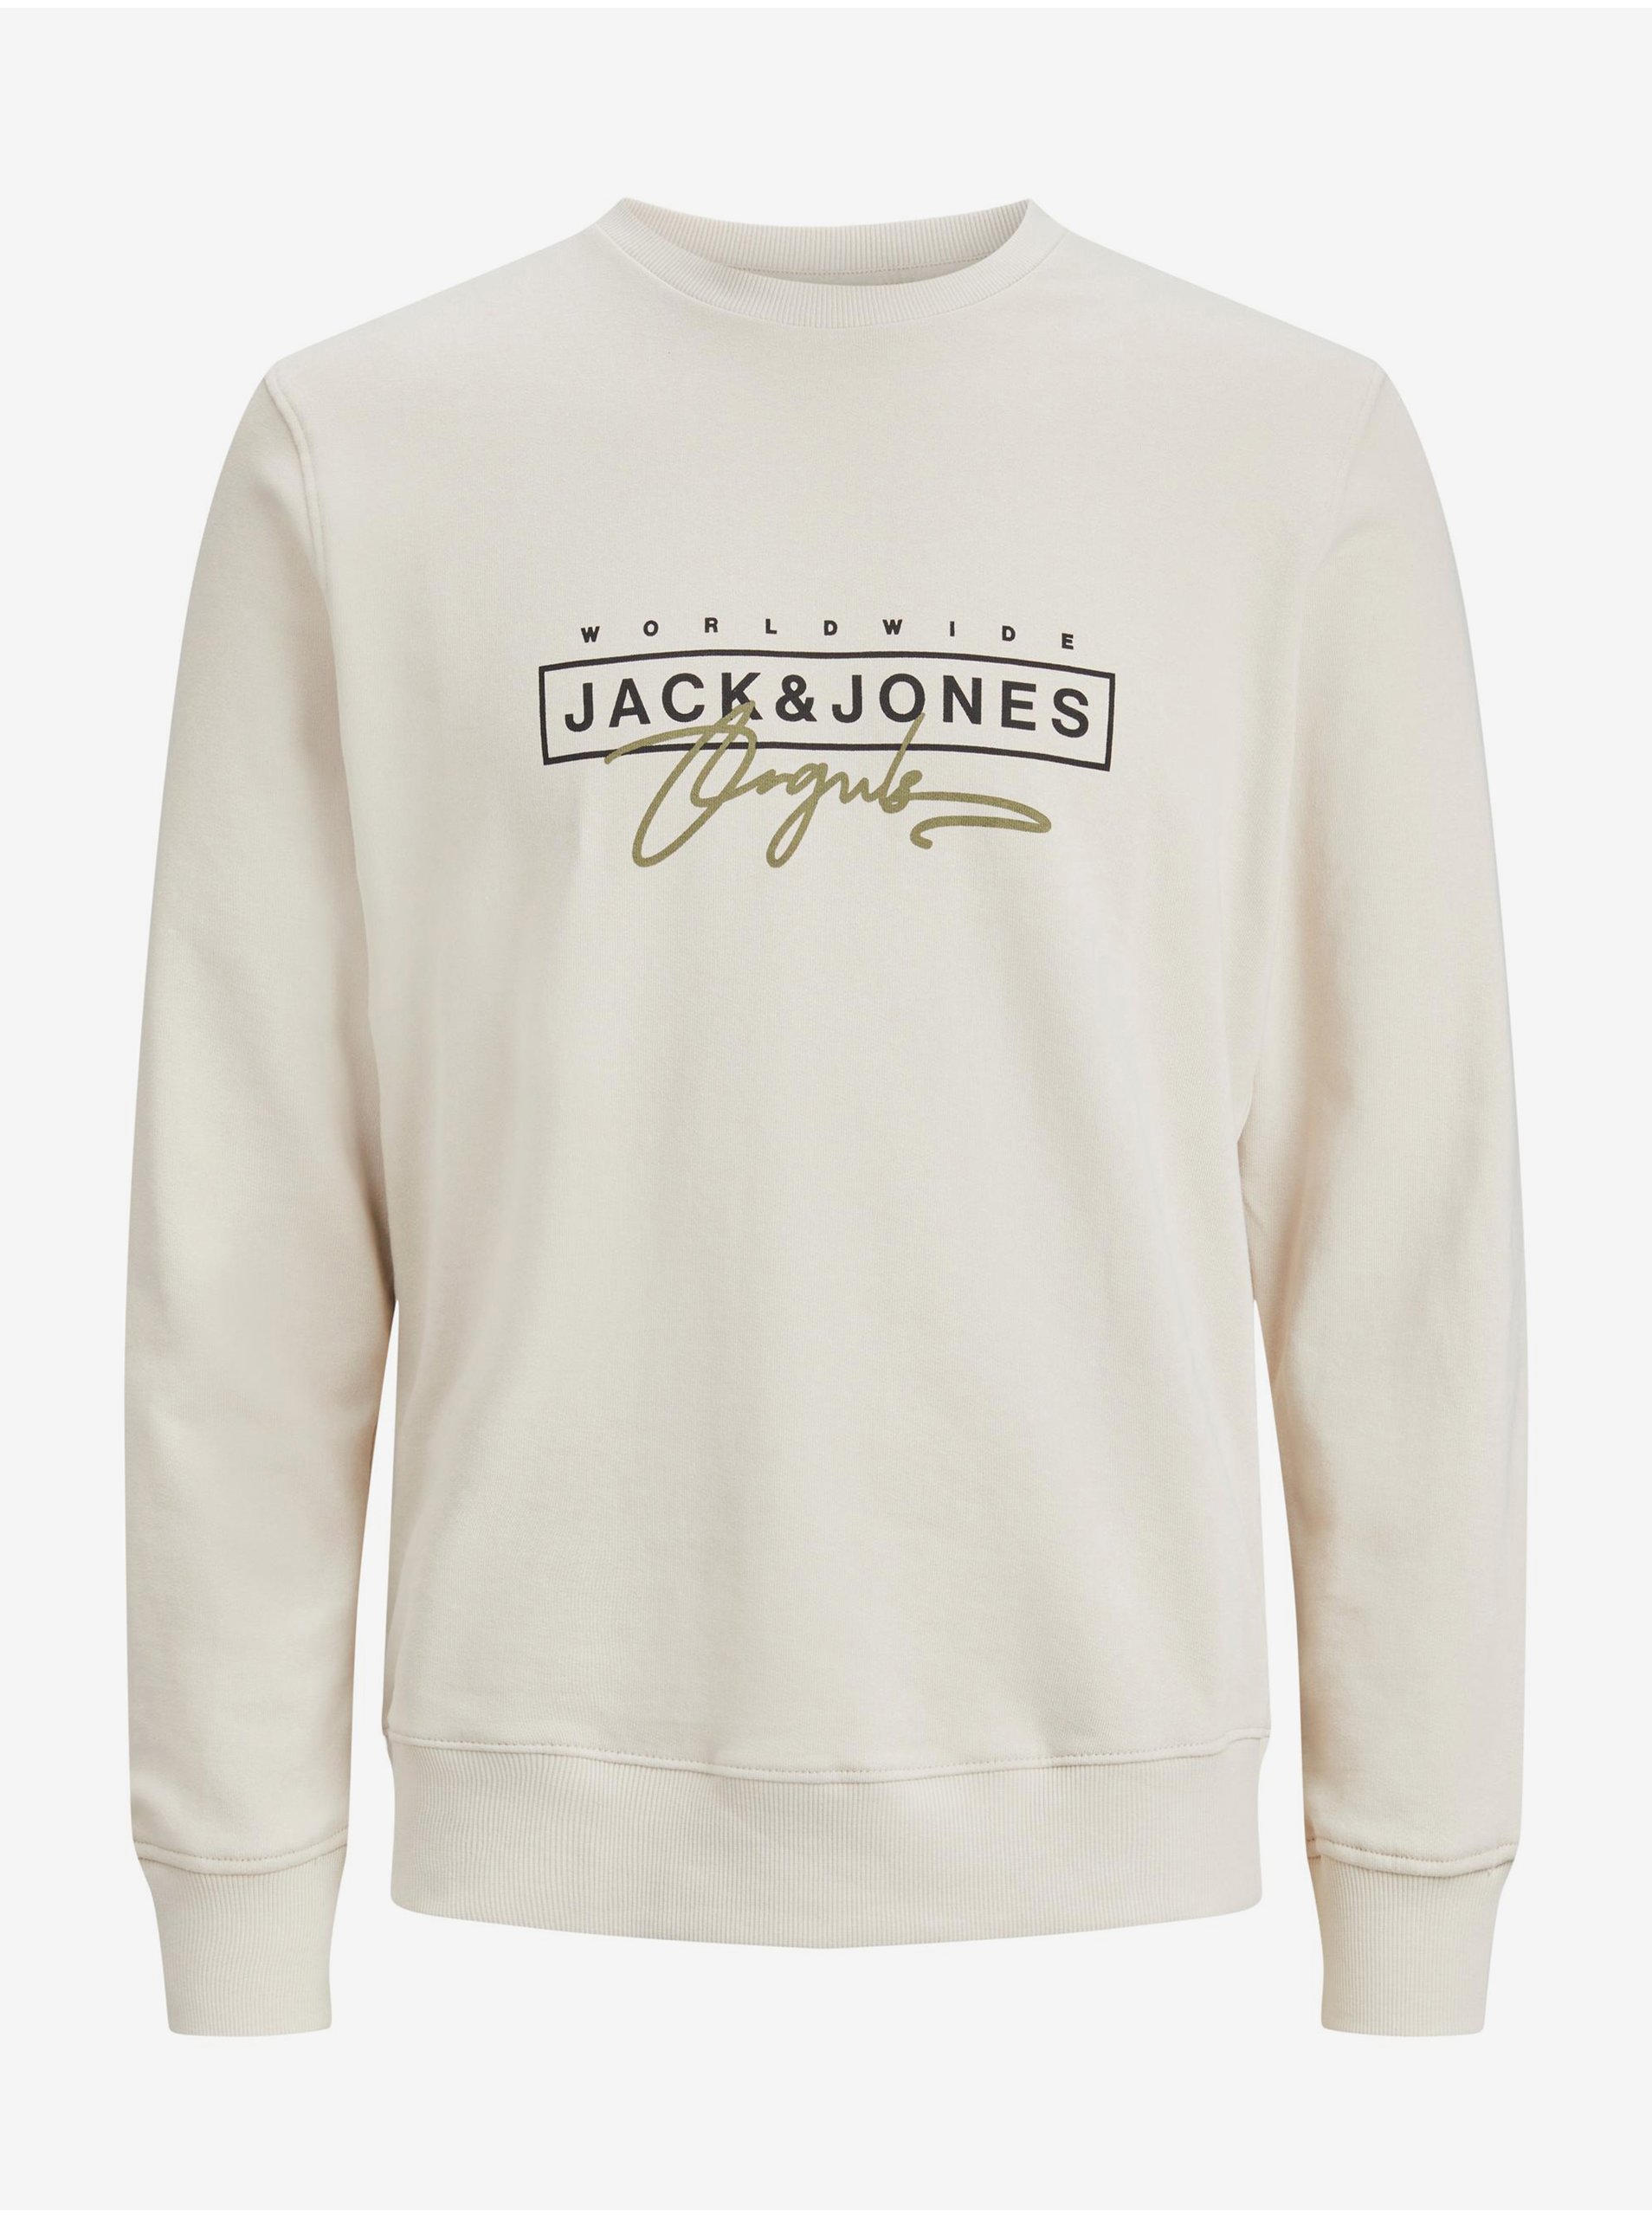 Beige Mens Sweatshirt Jack & Jones Splash - Men - Other